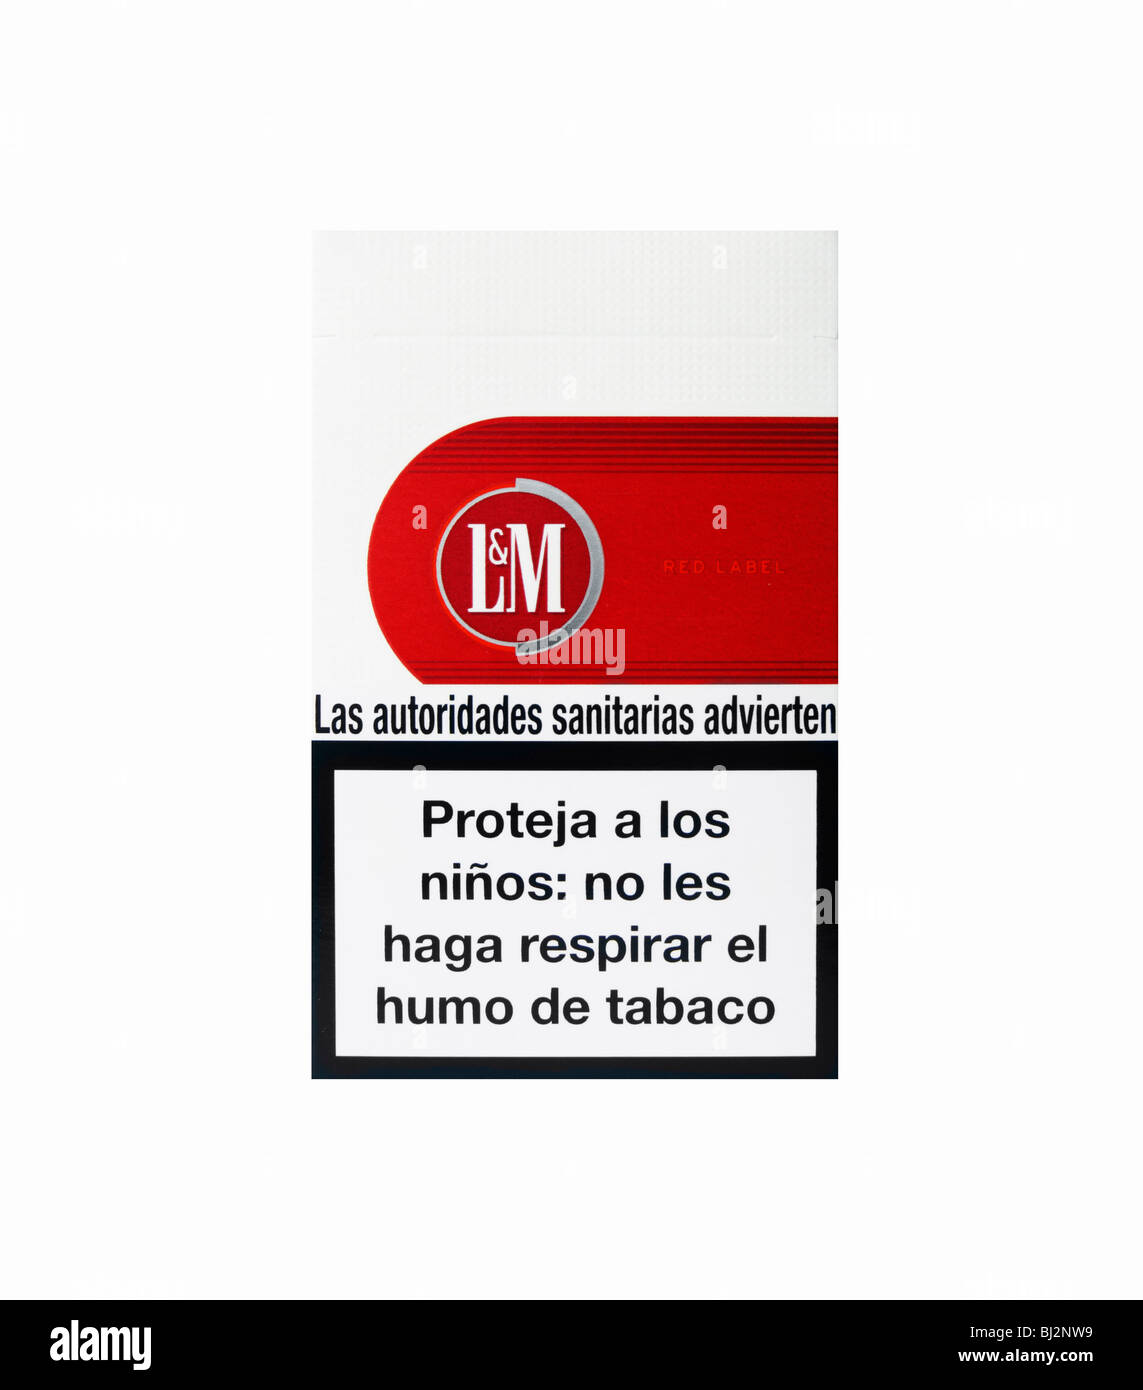 Banque cratère envahi espagnol porte plainte sa photo avertissements paquets  de cigarettes Intense Se produire Améliorer